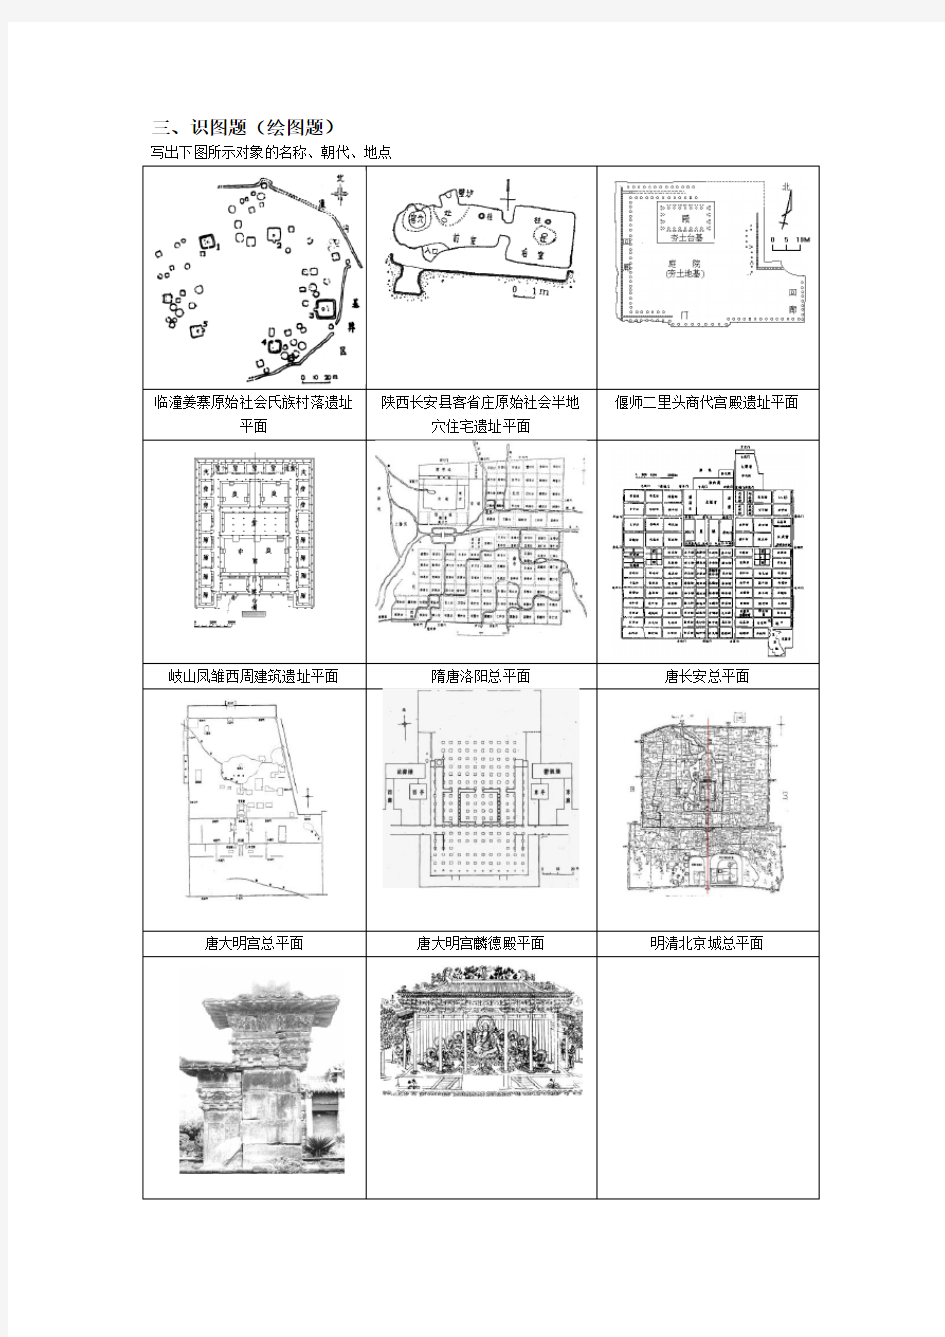 中国建筑史试题库之识图题(绘图题)